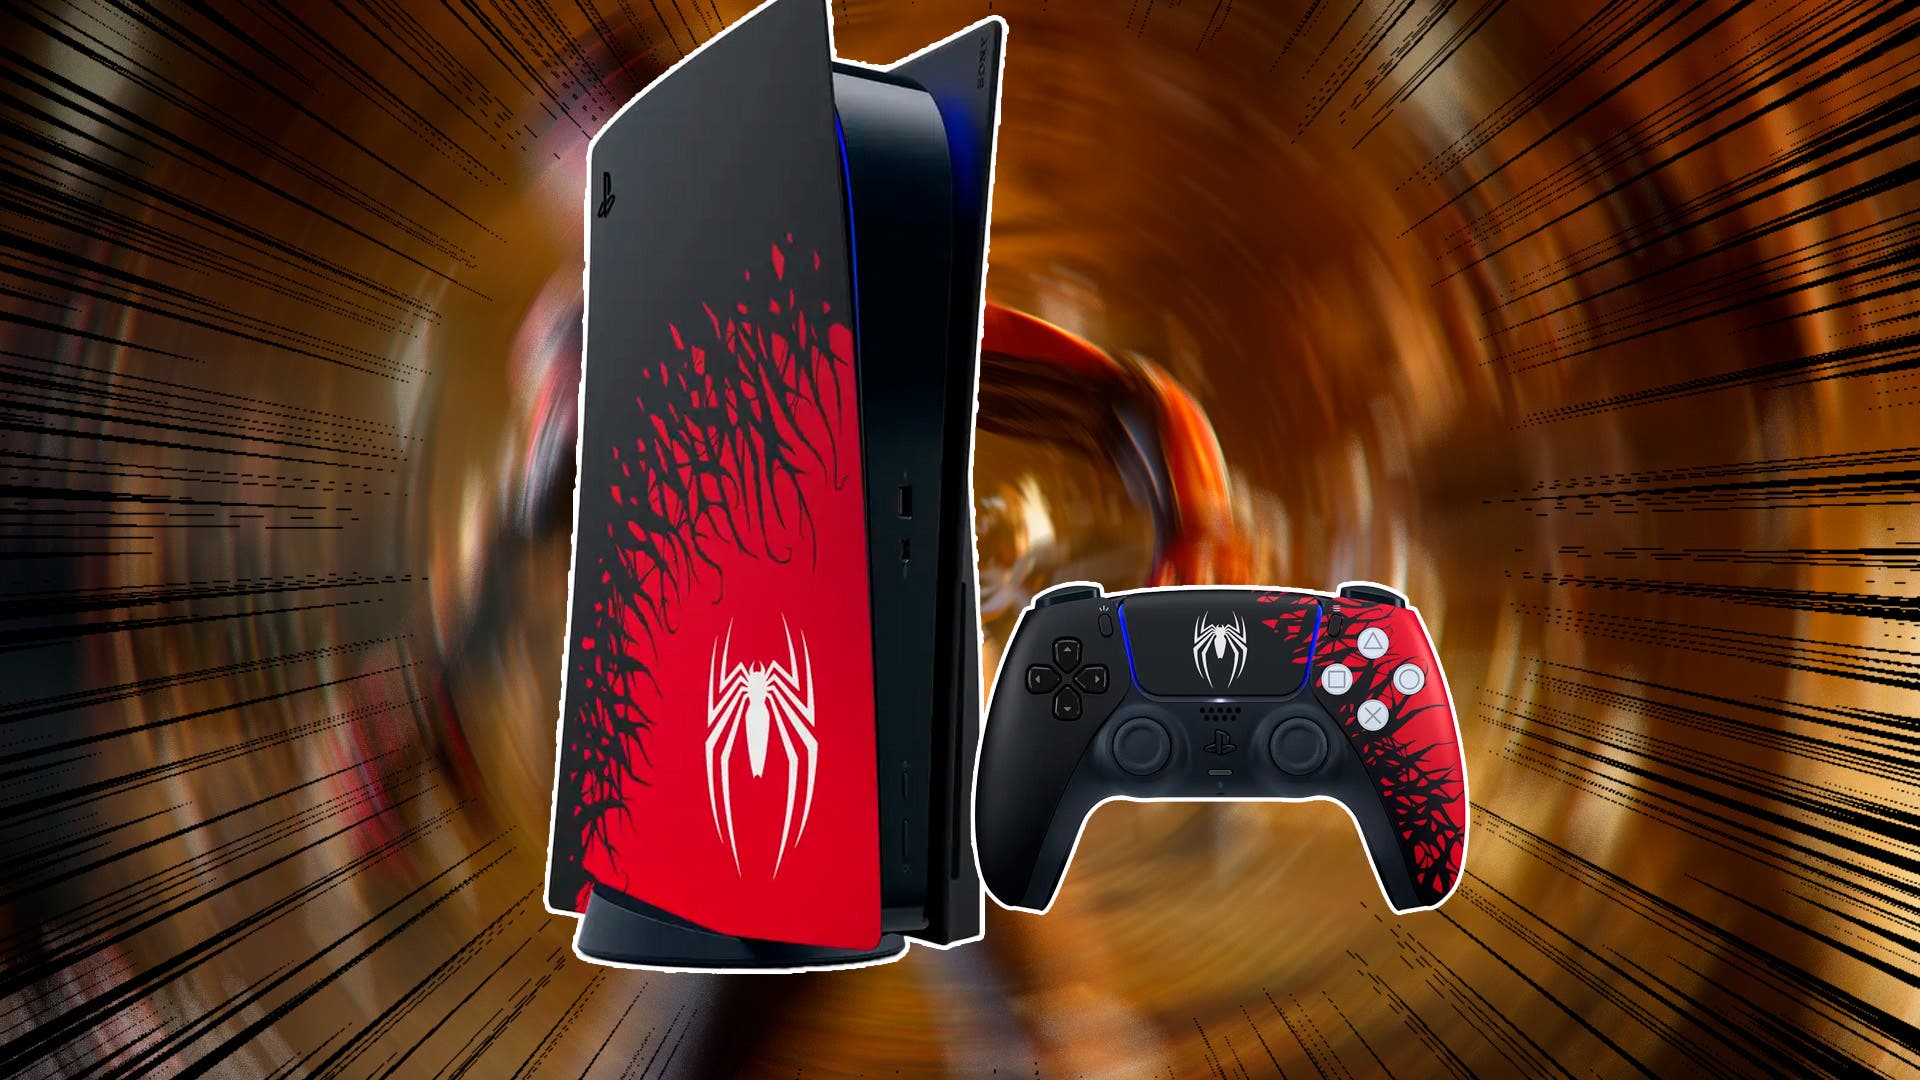 Playstation 5 Mando DUALSENSE Edición Limitada Marvel's Spider Man